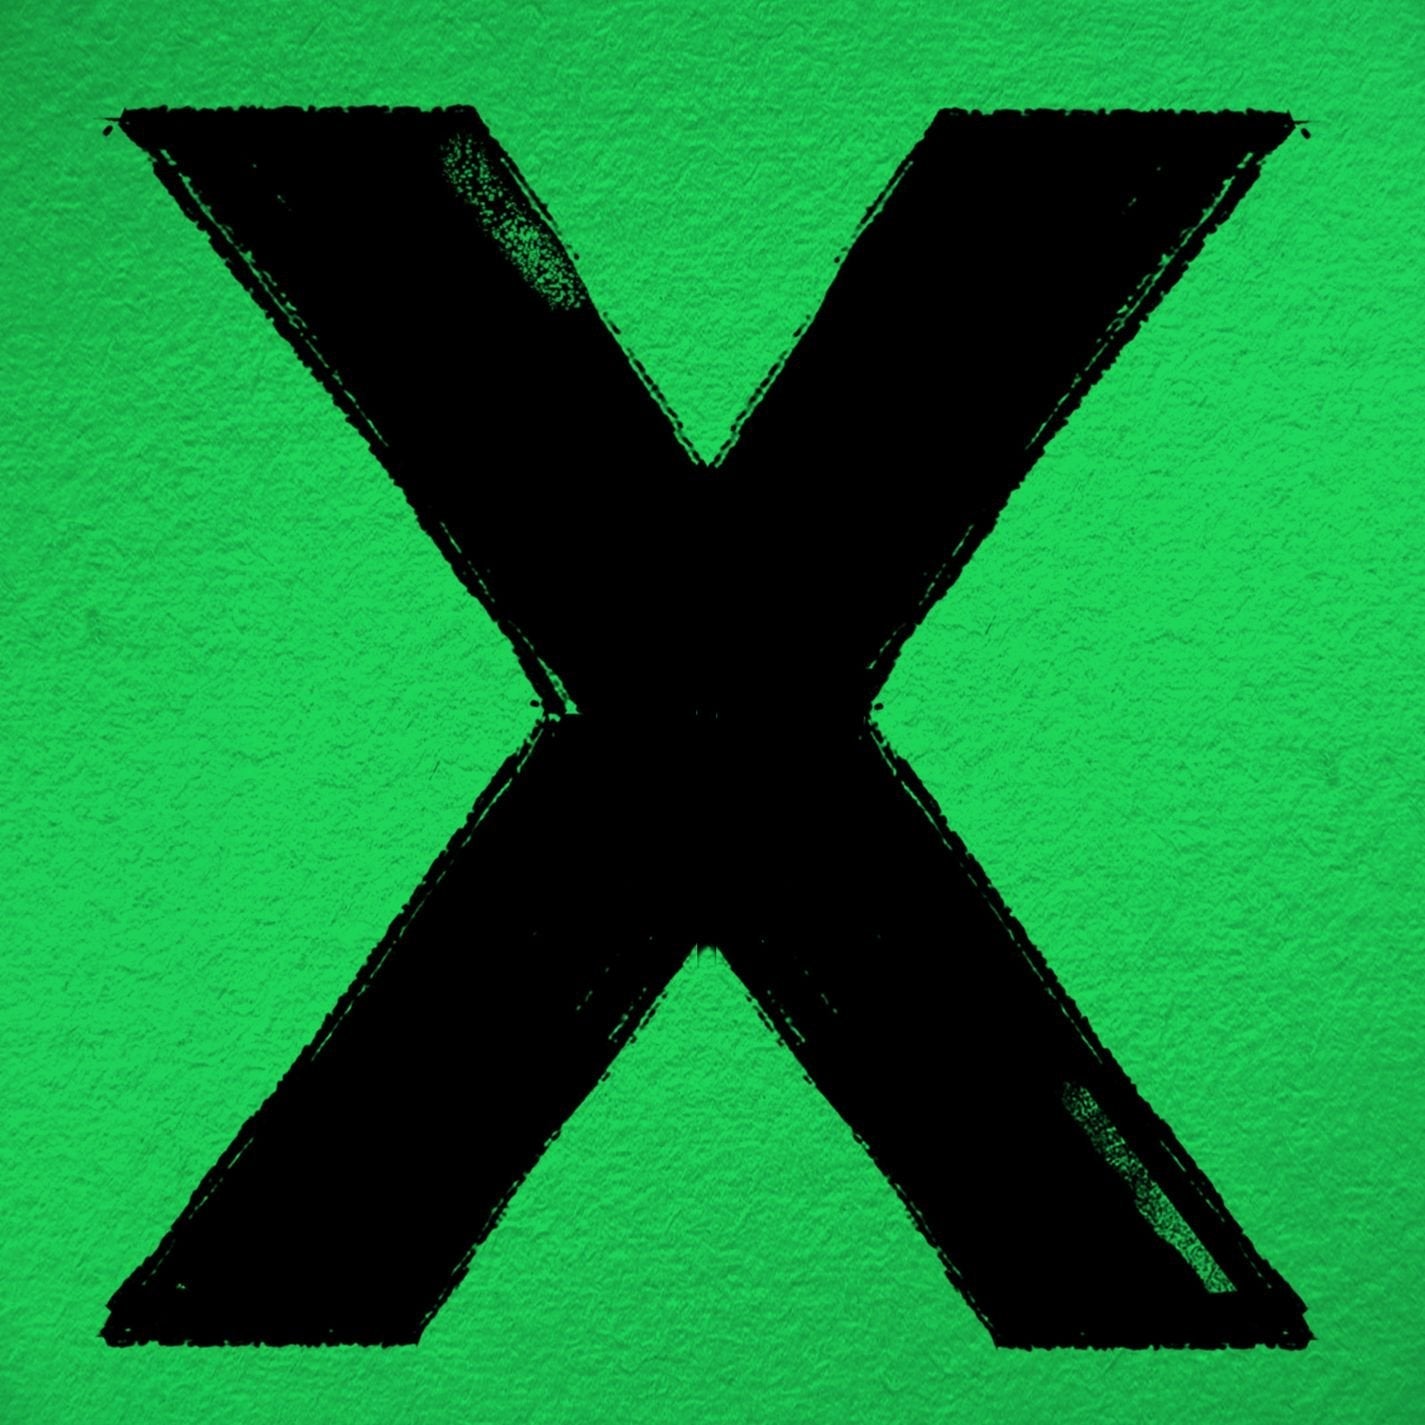 Ed Sheeran X Vinyl LP